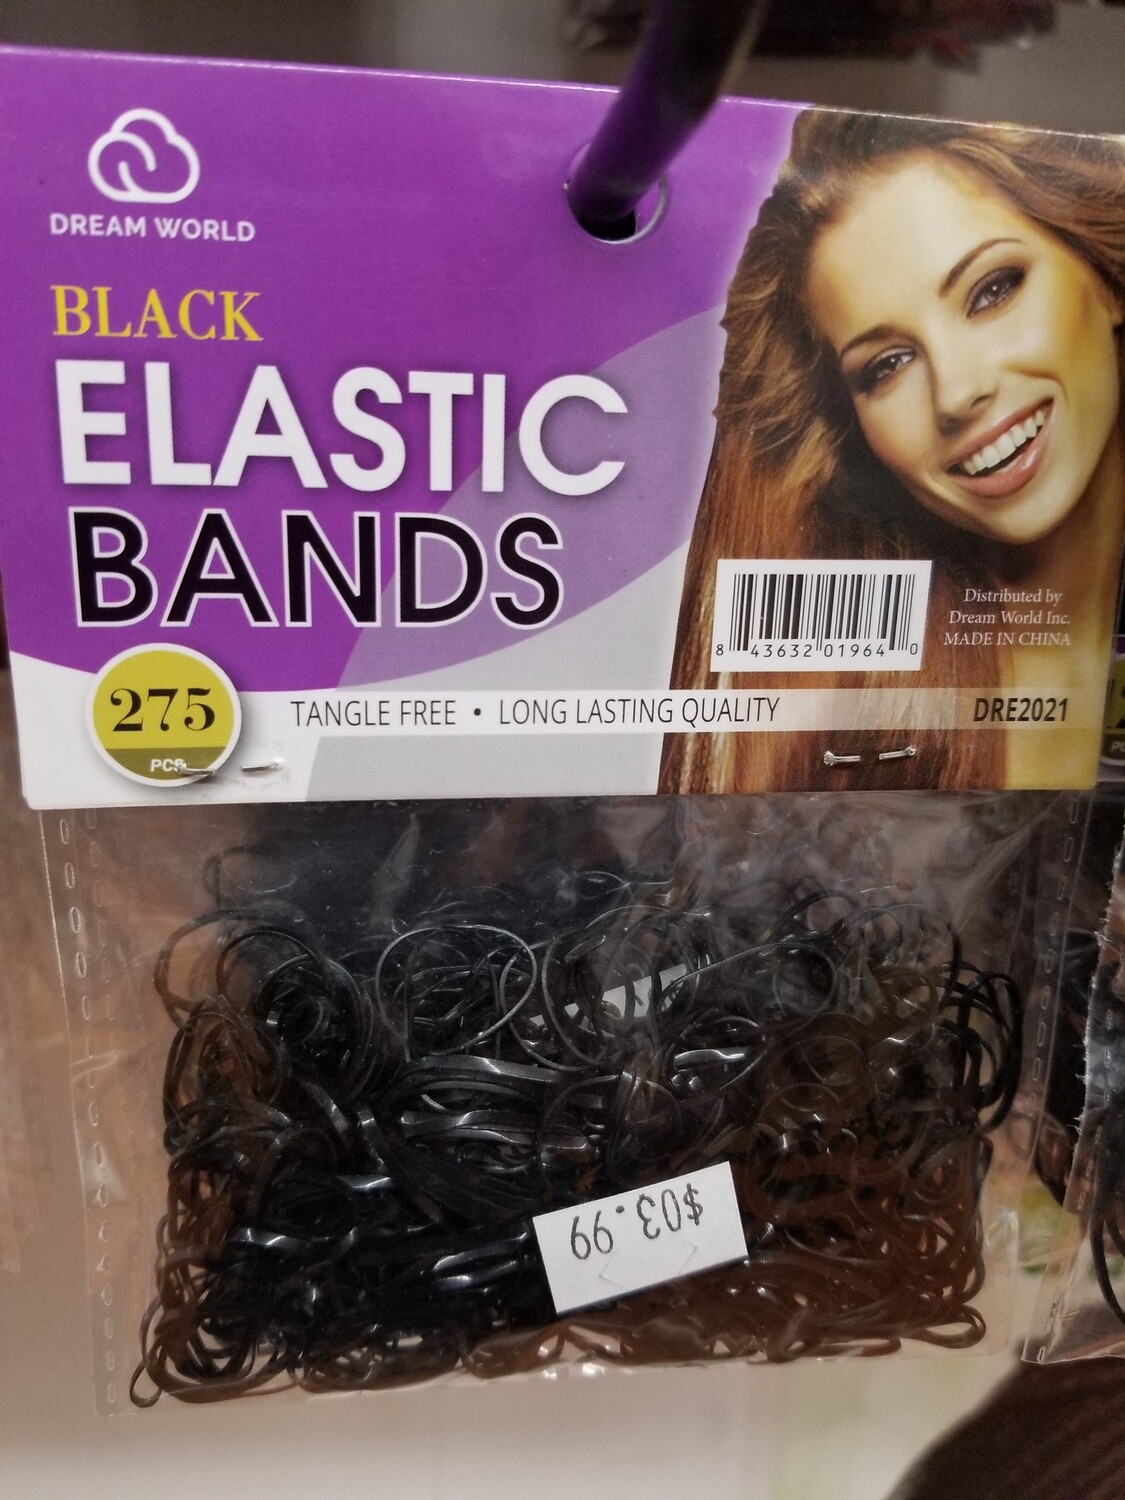 Black Elastic Bands 275 Pcs